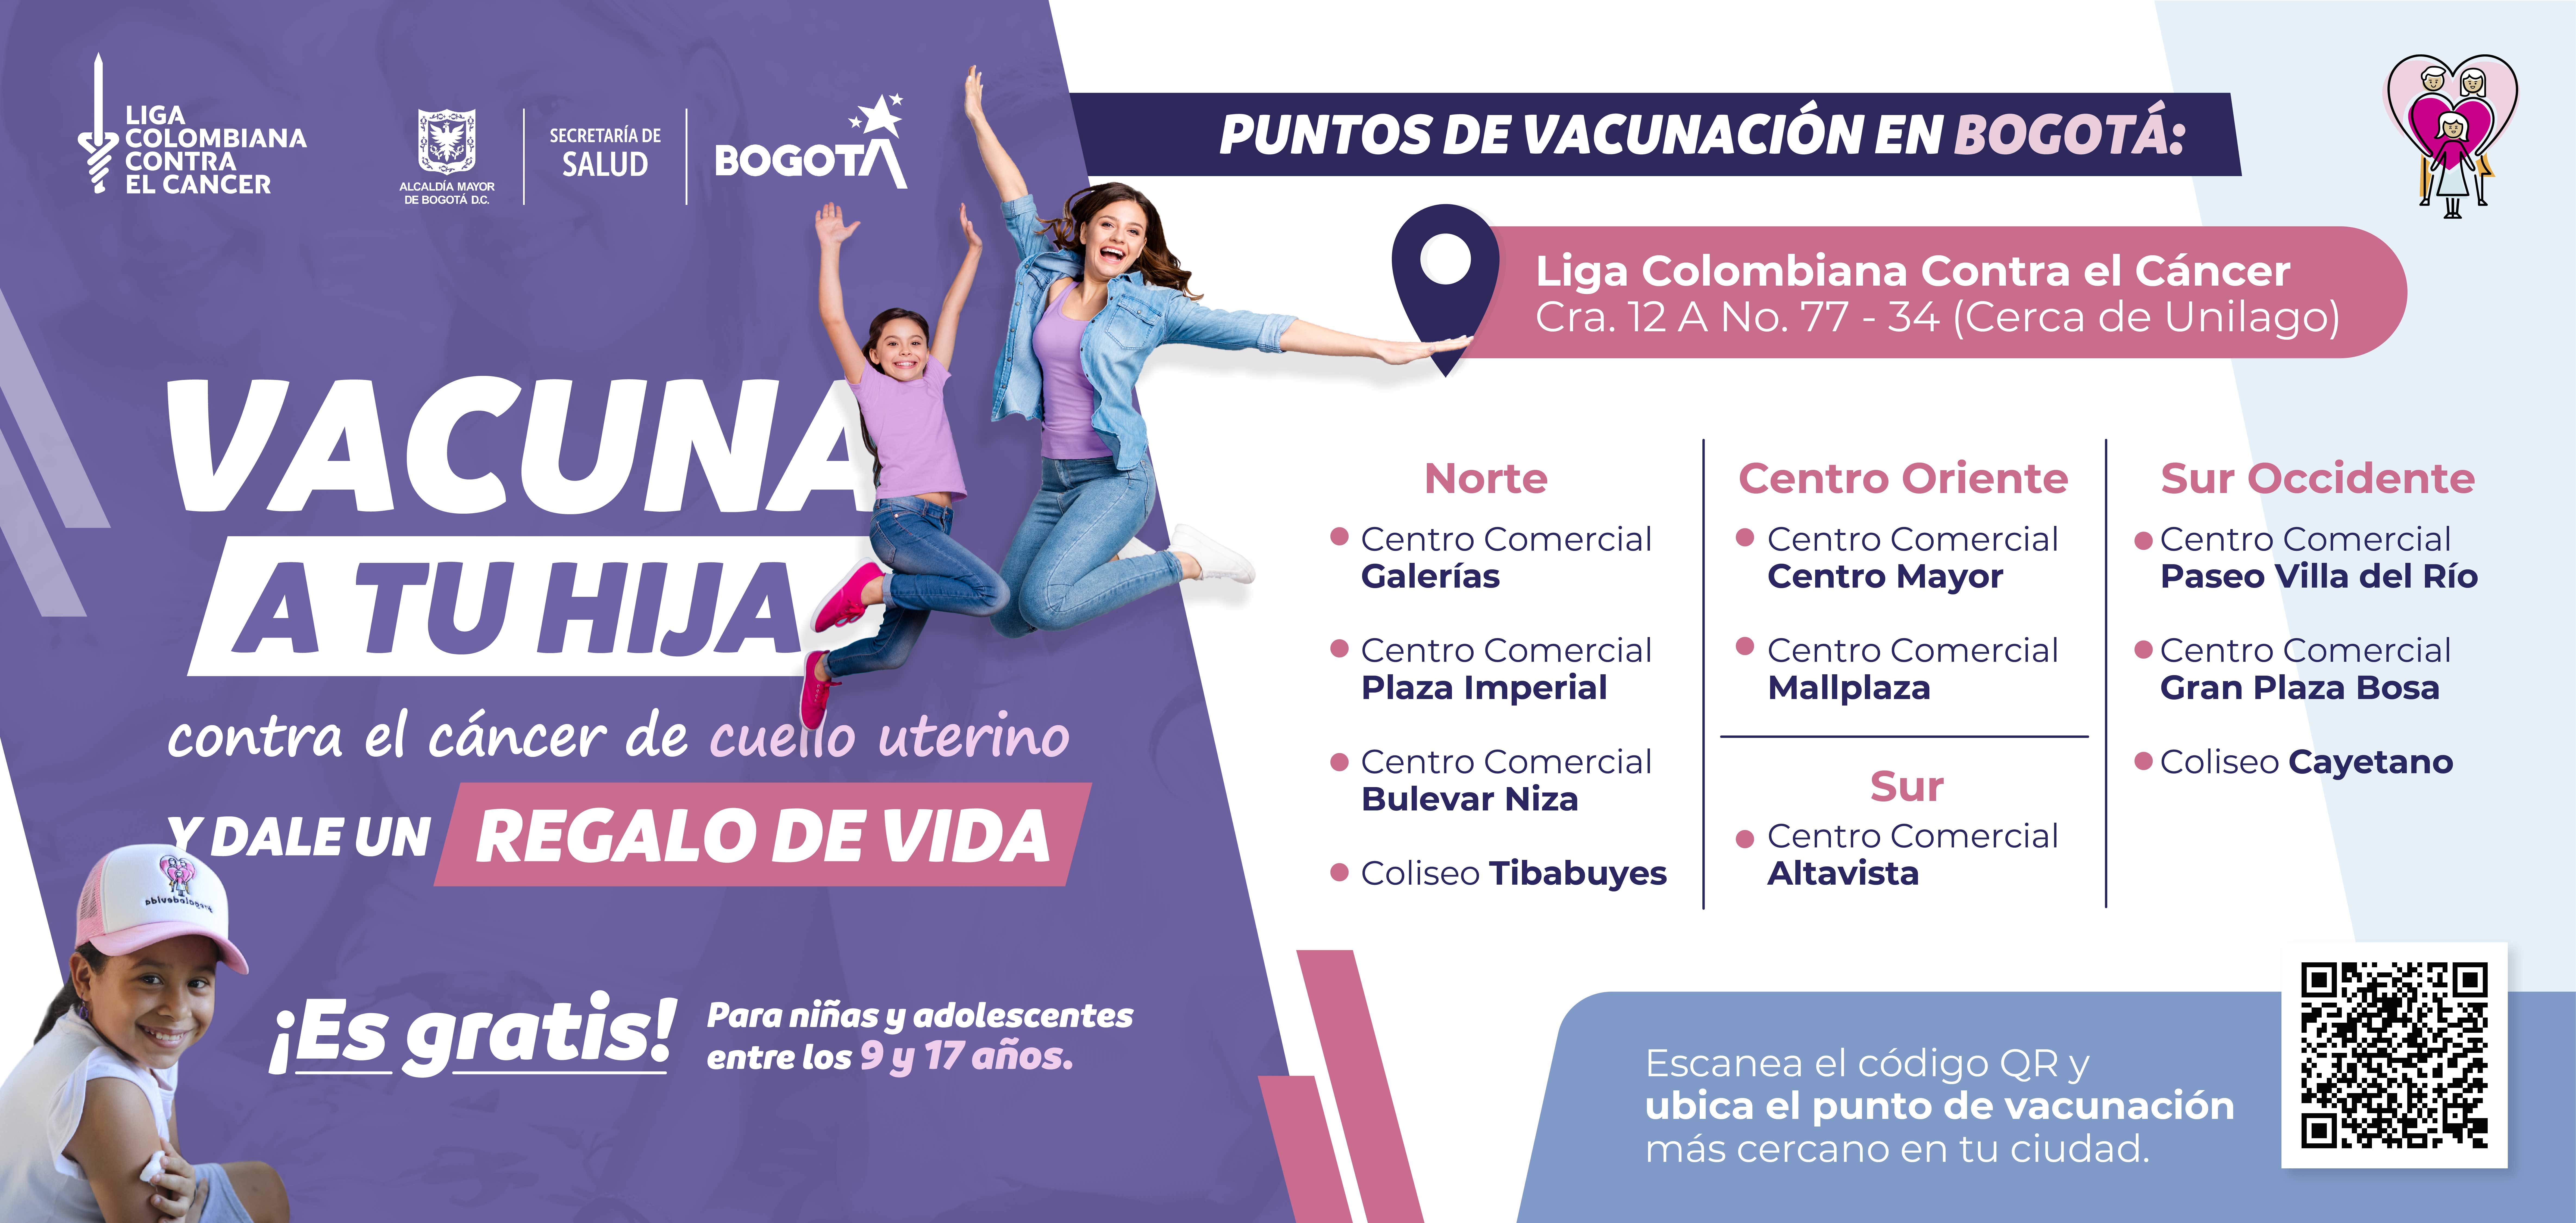 Cancer de cuello uterino - Liga Colombiana contra el Cáncer